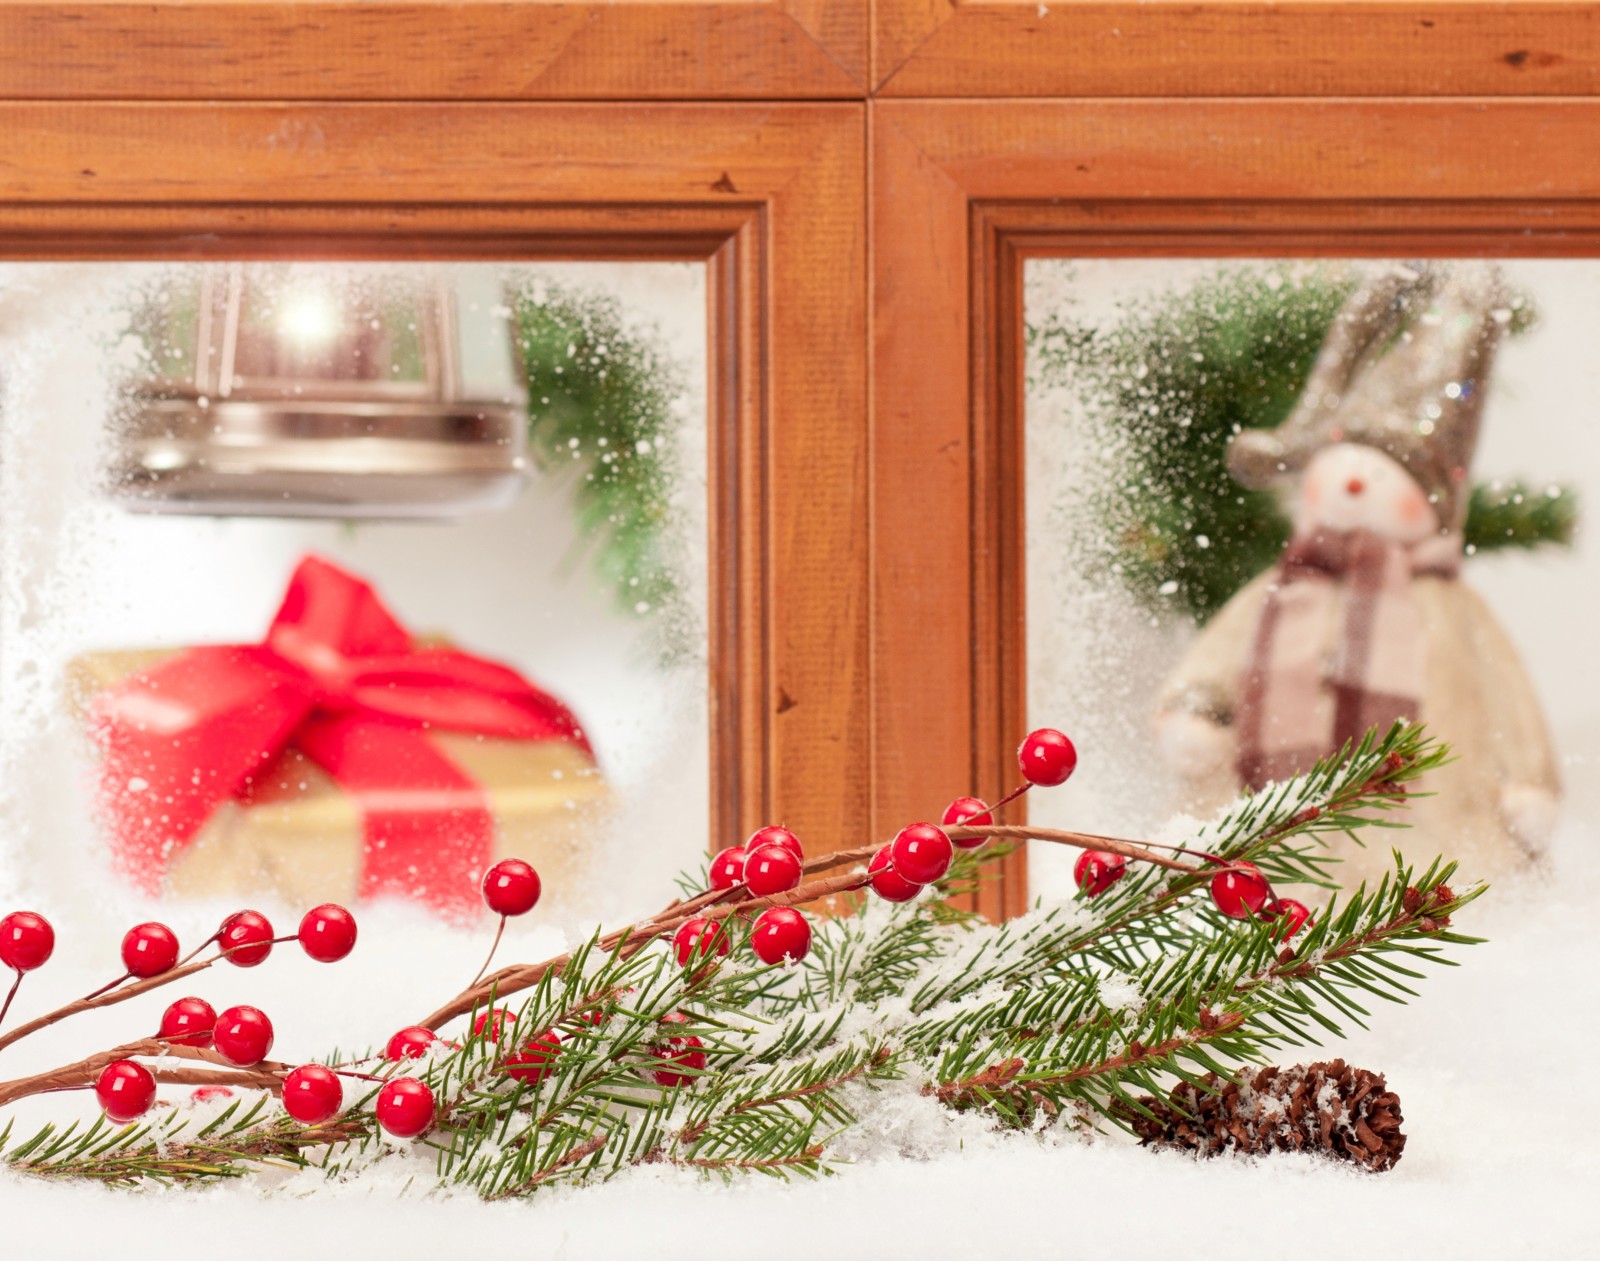 tuyết, Năm mới, Giáng sinh, trang trí, Chúc mừng, mùa đông, đồ chơi